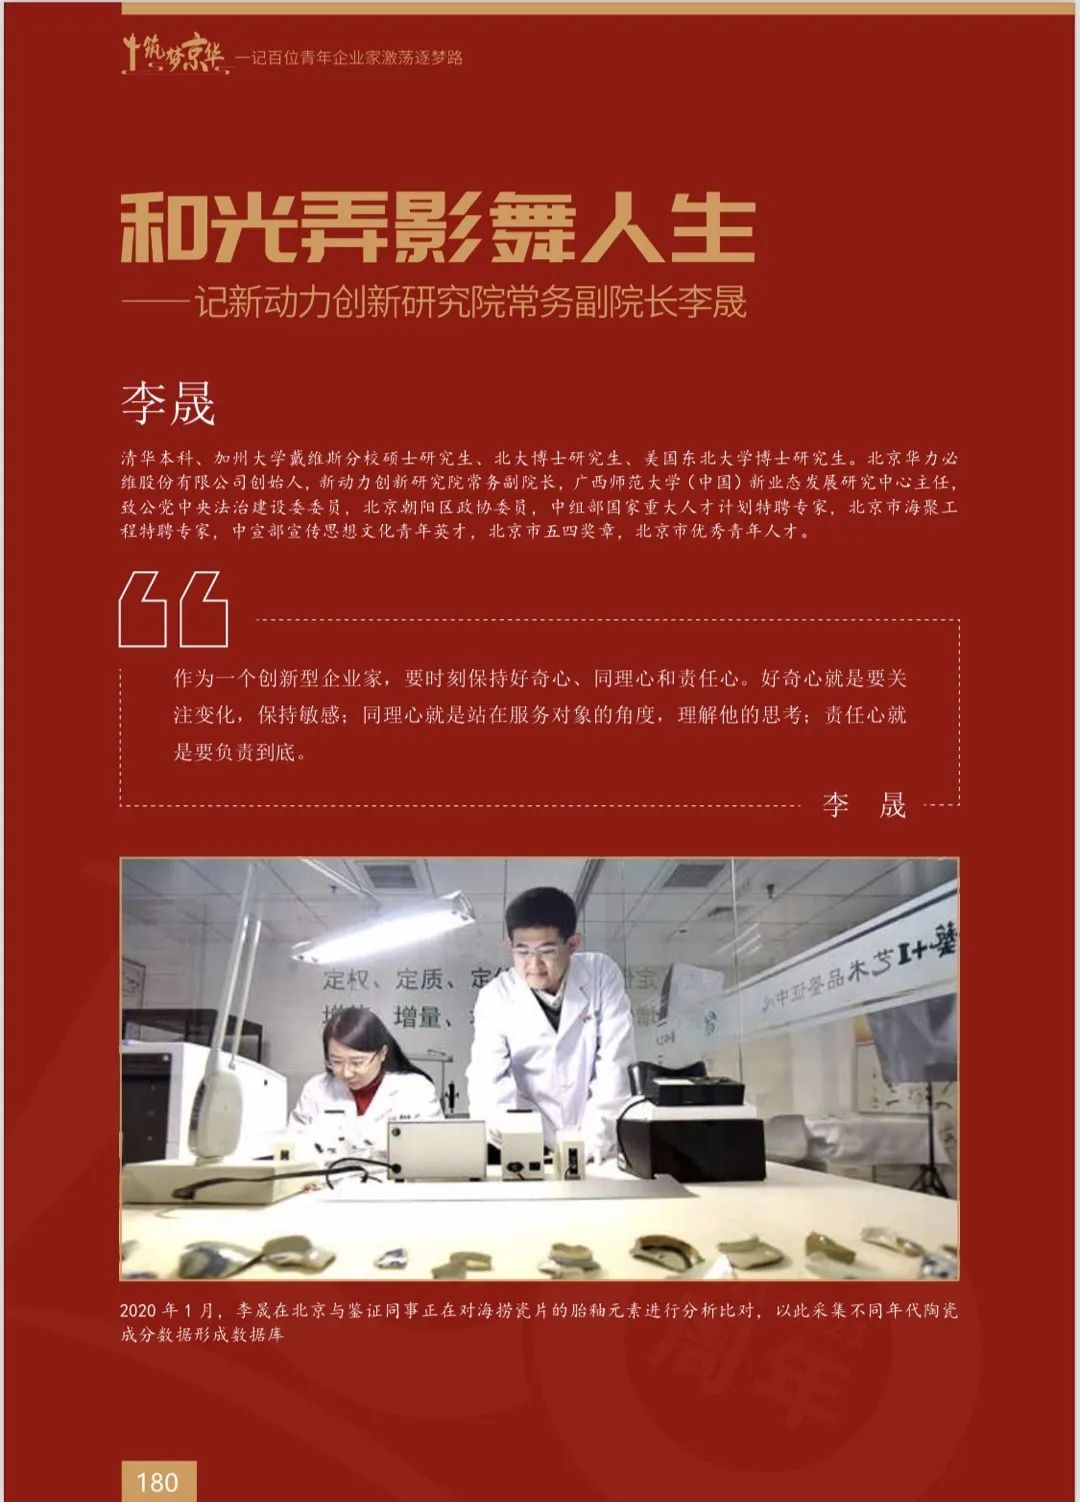 李晟入选北京市工商联100名青年企业家图书《筑梦京华》